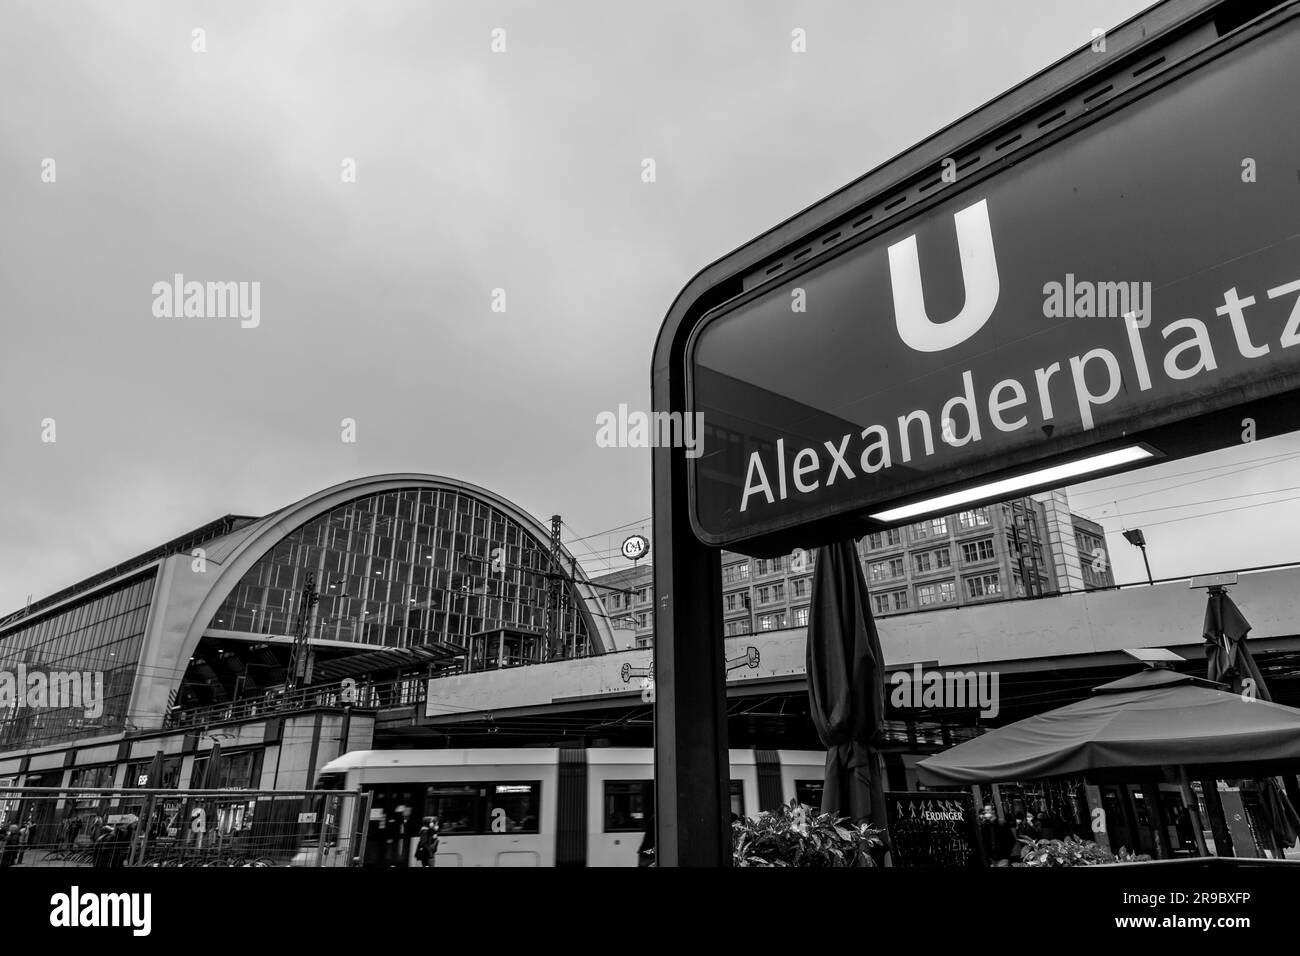 Berlin, Allemagne - DEC 21, 2021: Alexanderplatz est une grande place publique et un centre de transport dans le quartier central de Mitte à Berlin. Nommé d'après le Rus Banque D'Images